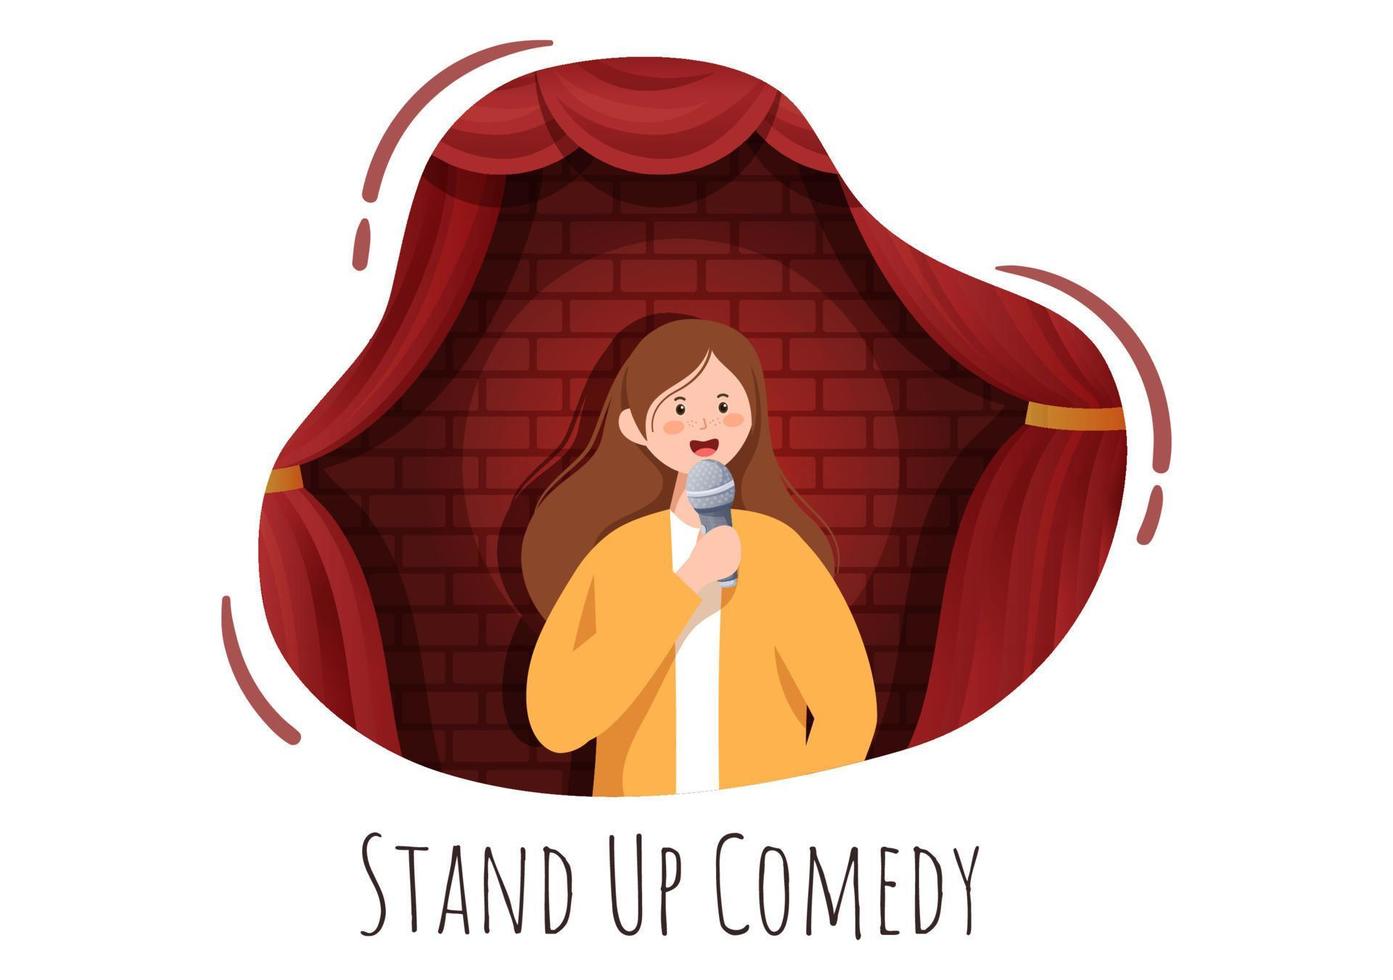 stand-up comedy show theaterscène met rode gordijnen en open microfoon voor komiek die op het podium optreedt in cartoonillustratie in vlakke stijl vector